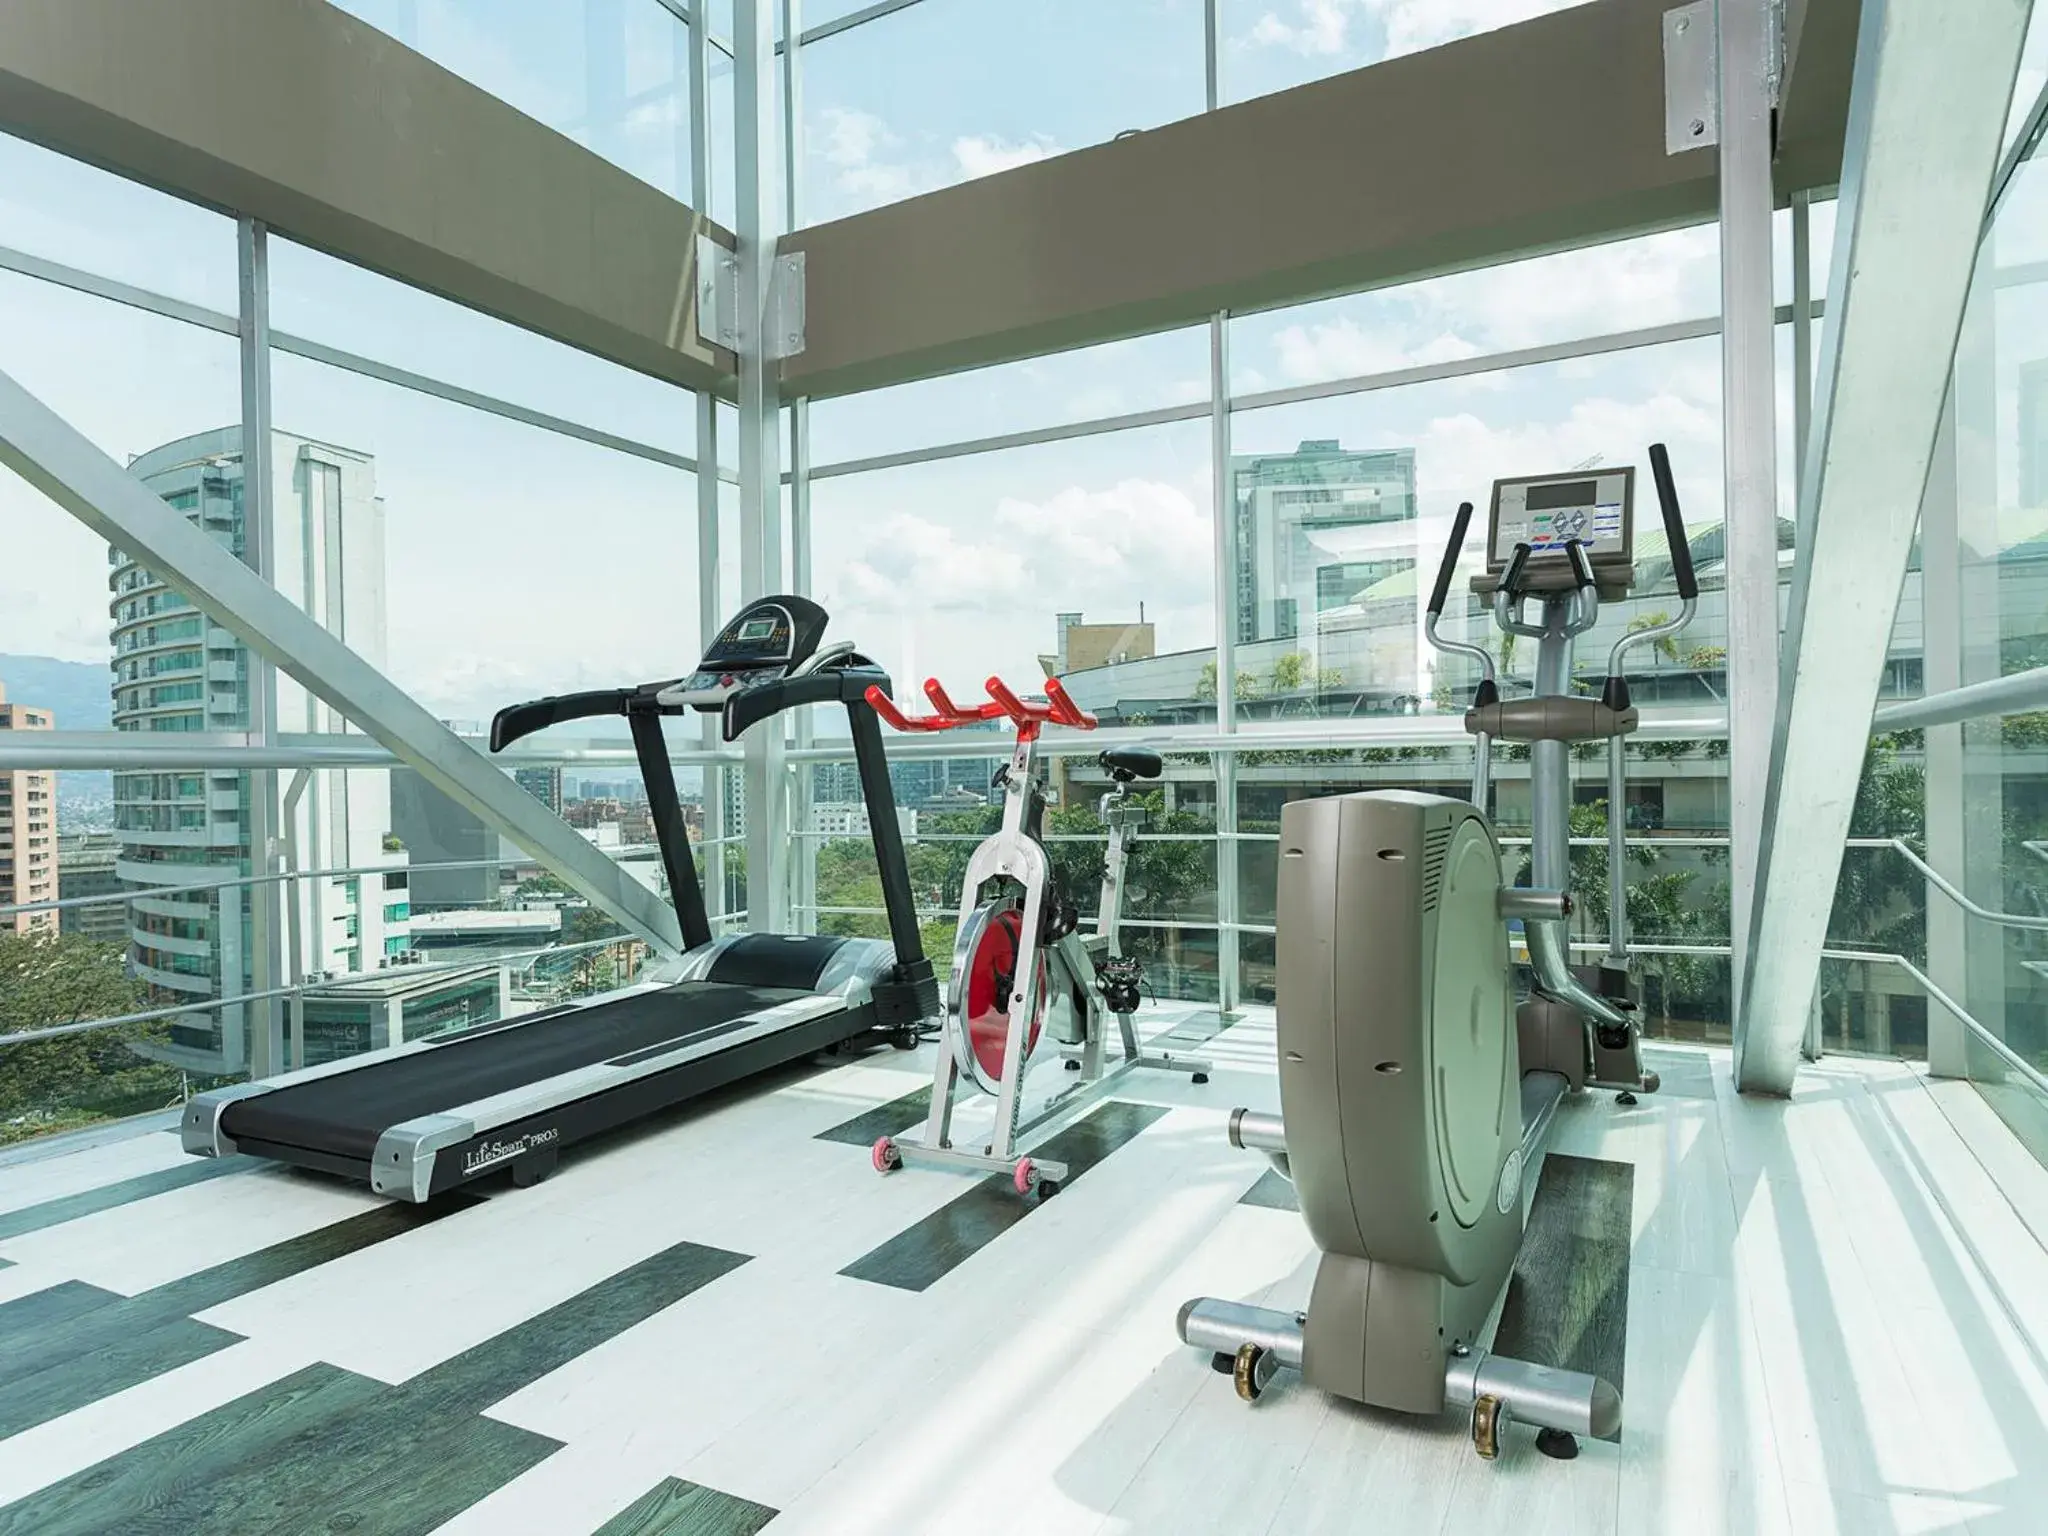 Fitness centre/facilities, Fitness Center/Facilities in Hotel bh El Poblado